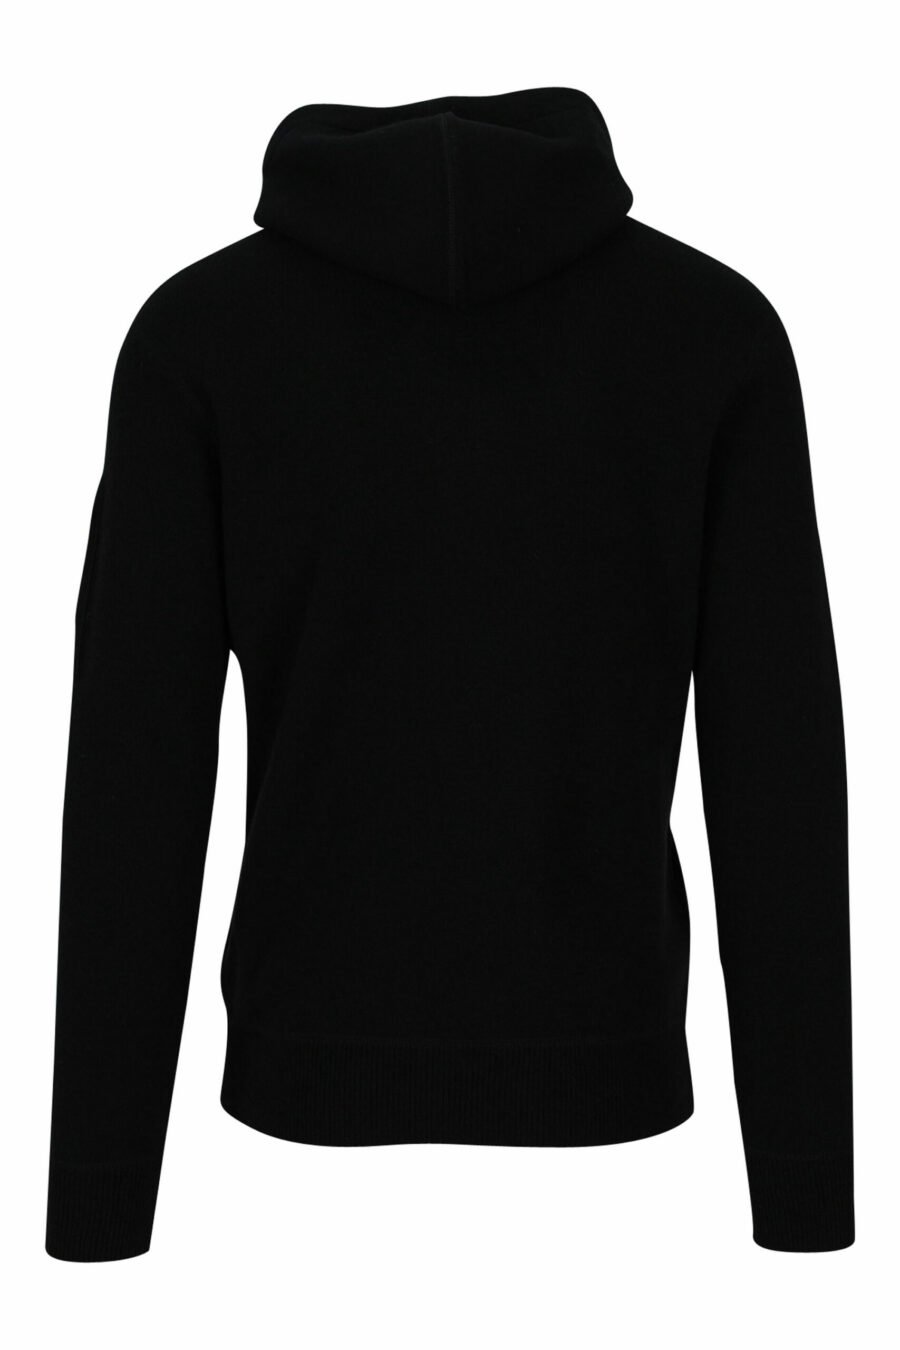 Schwarzes Kapuzensweatshirt mit seitlichem Linsenlogo - 7620943636666 2 skaliert